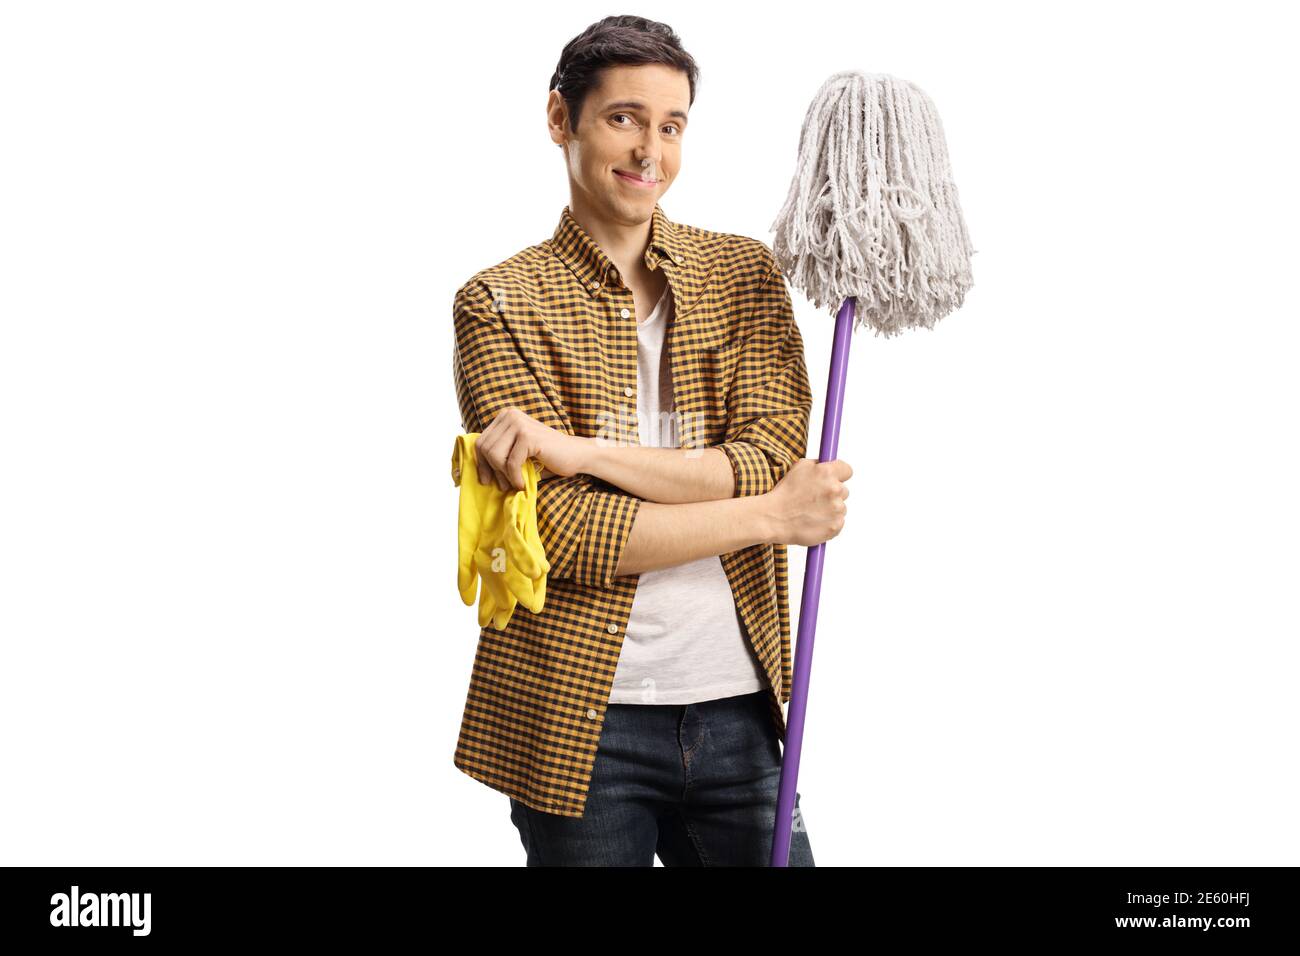 Giovane uomo che tiene un mop di pulizia e un paio di guanti isolati su sfondo bianco Foto Stock